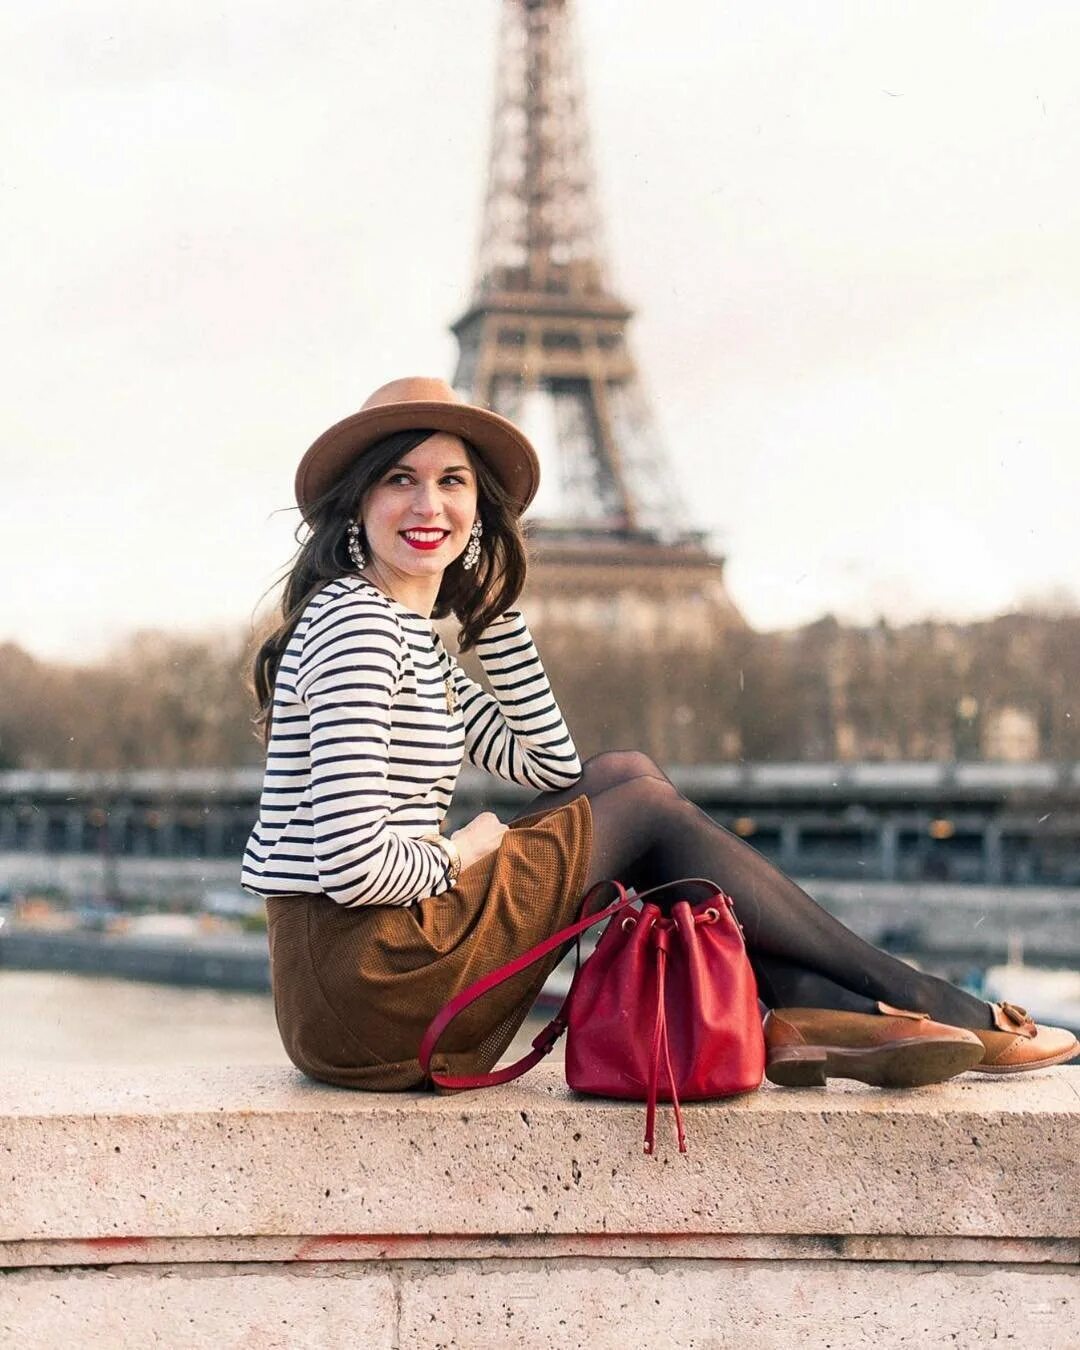 Гаврош французский Шик.. Парижский Гаврош стиль. Мода Парижа Франции стиль Парижский Шик. Французский Шик утонченный образ парижанки.